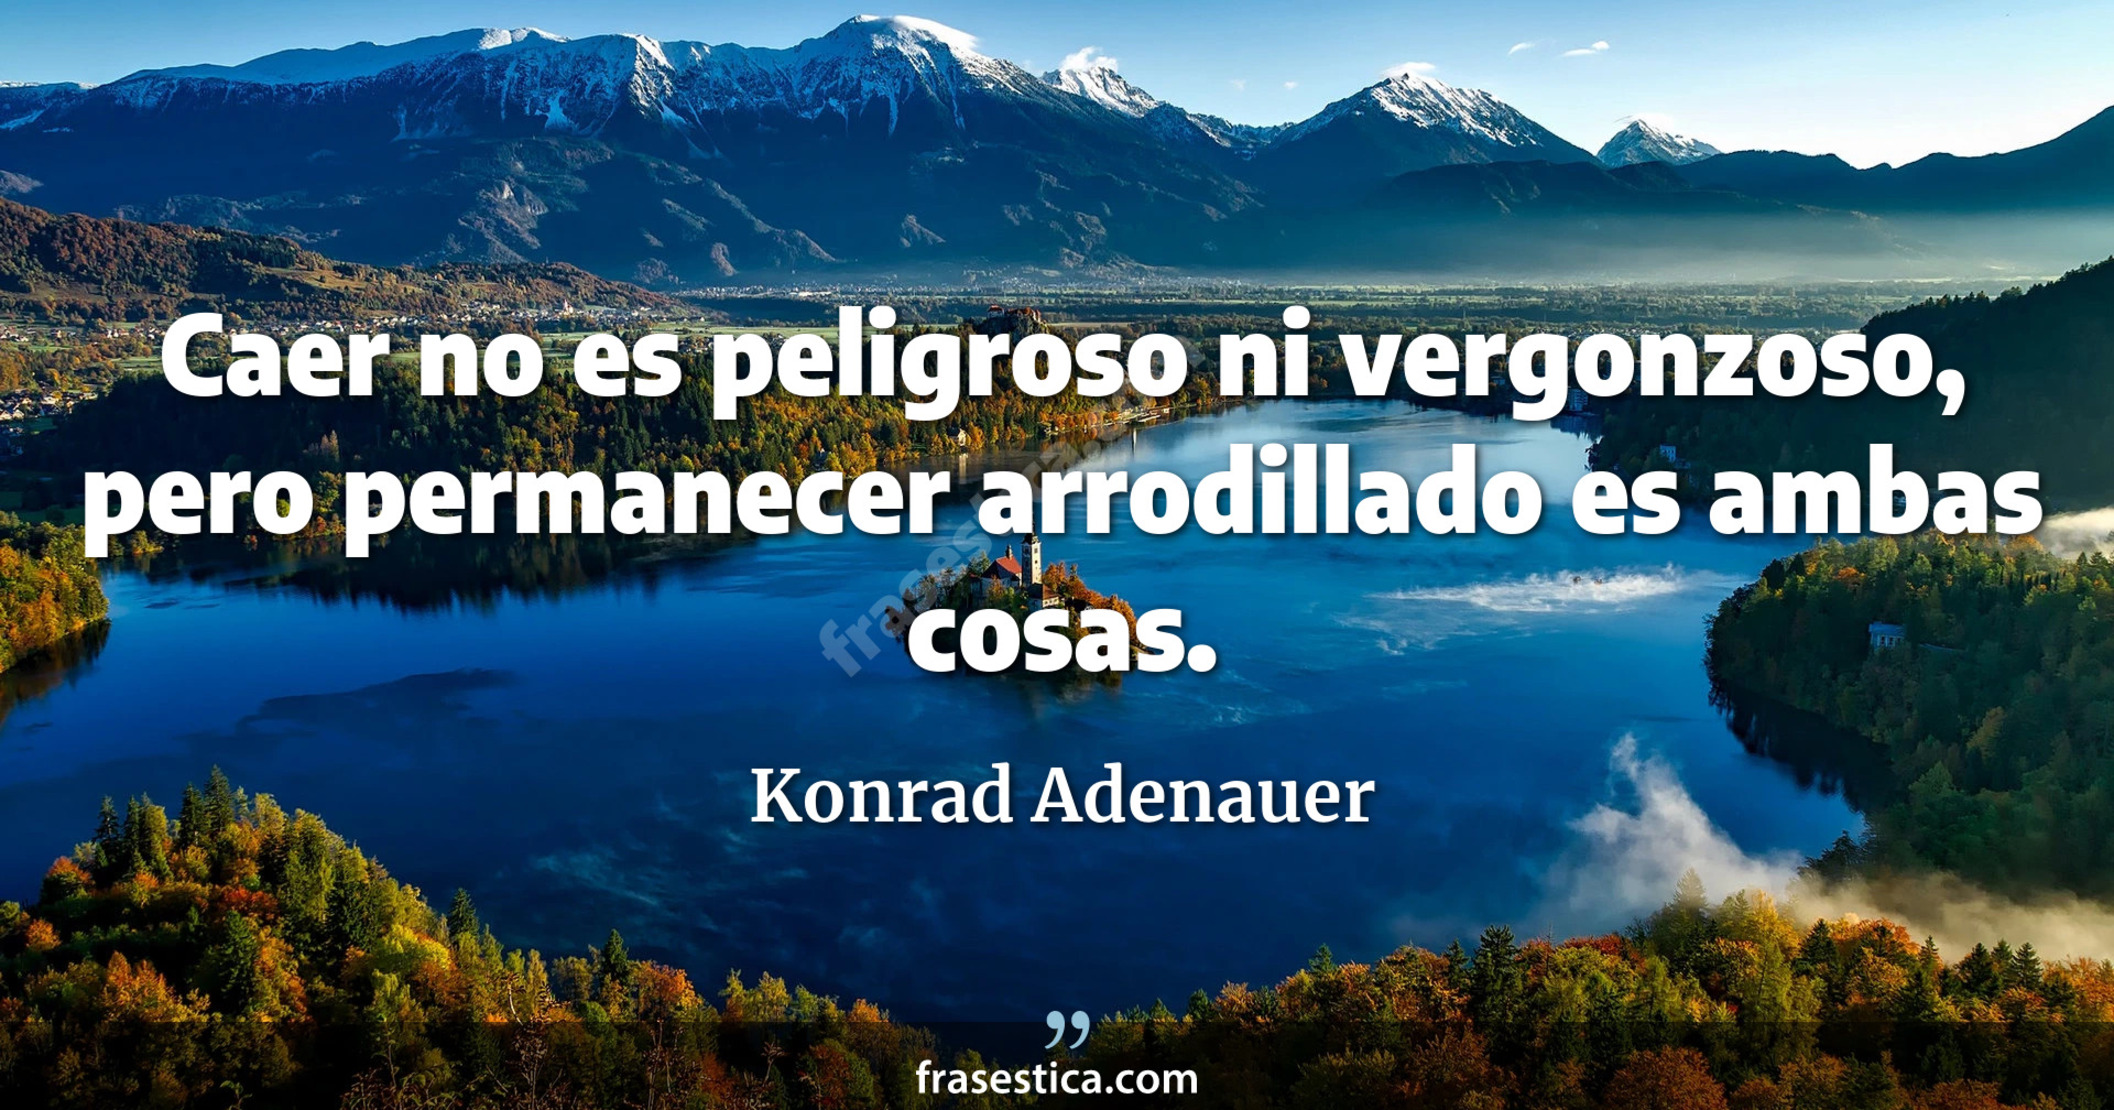 Caer no es peligroso ni vergonzoso, pero permanecer arrodillado es ambas cosas. - Konrad Adenauer